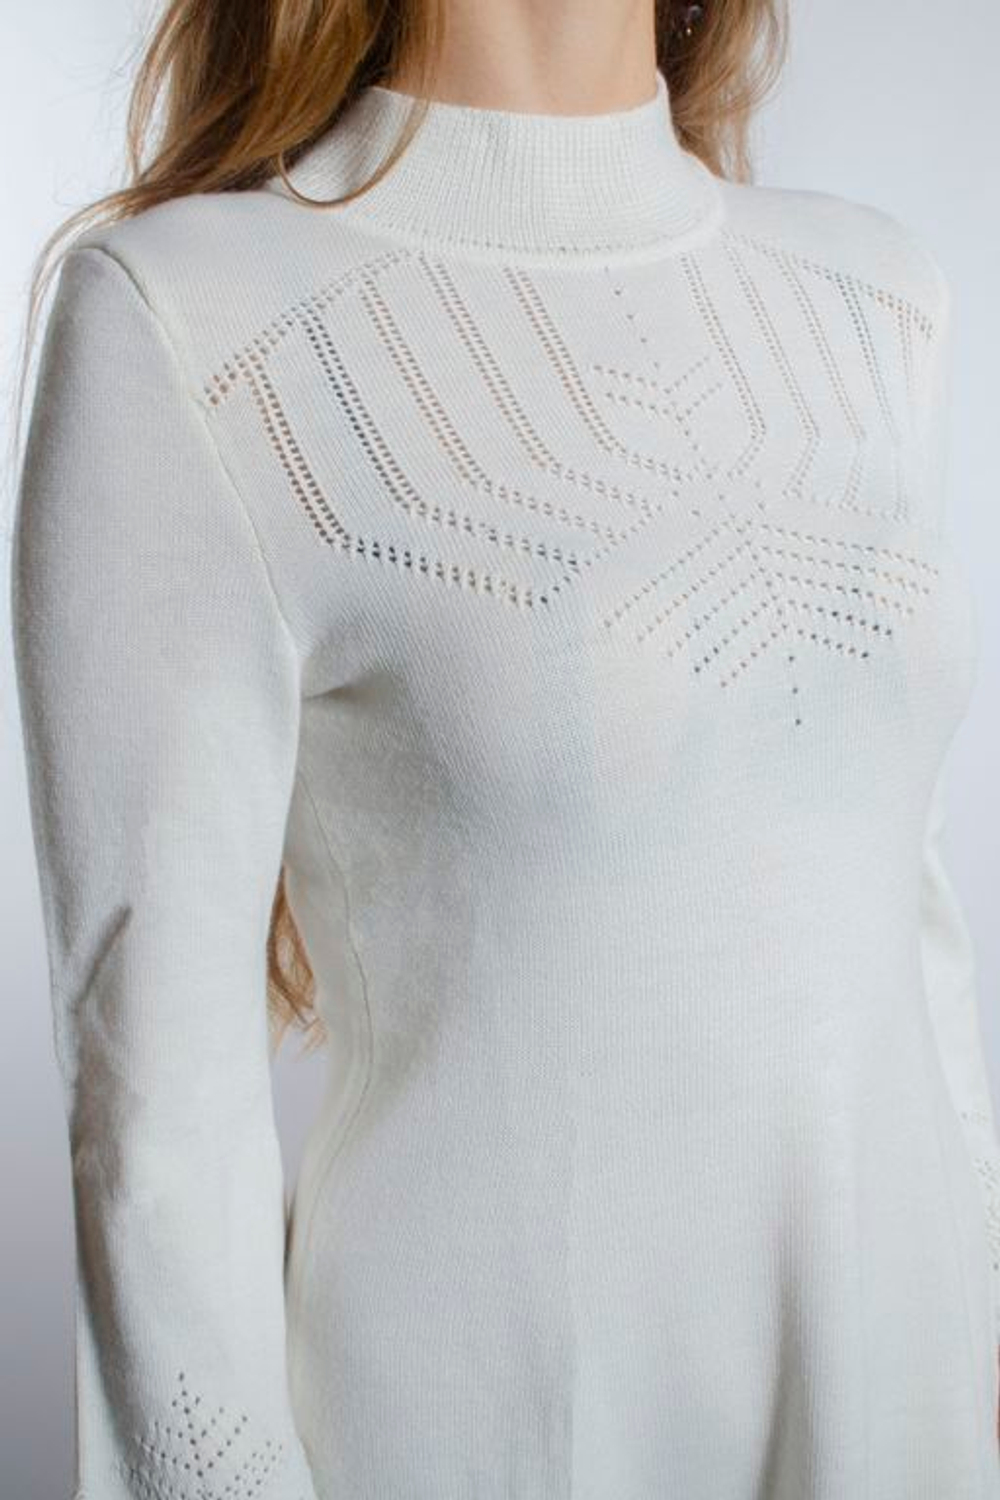 Платье женское ДТЖ005-02 белый натуральный